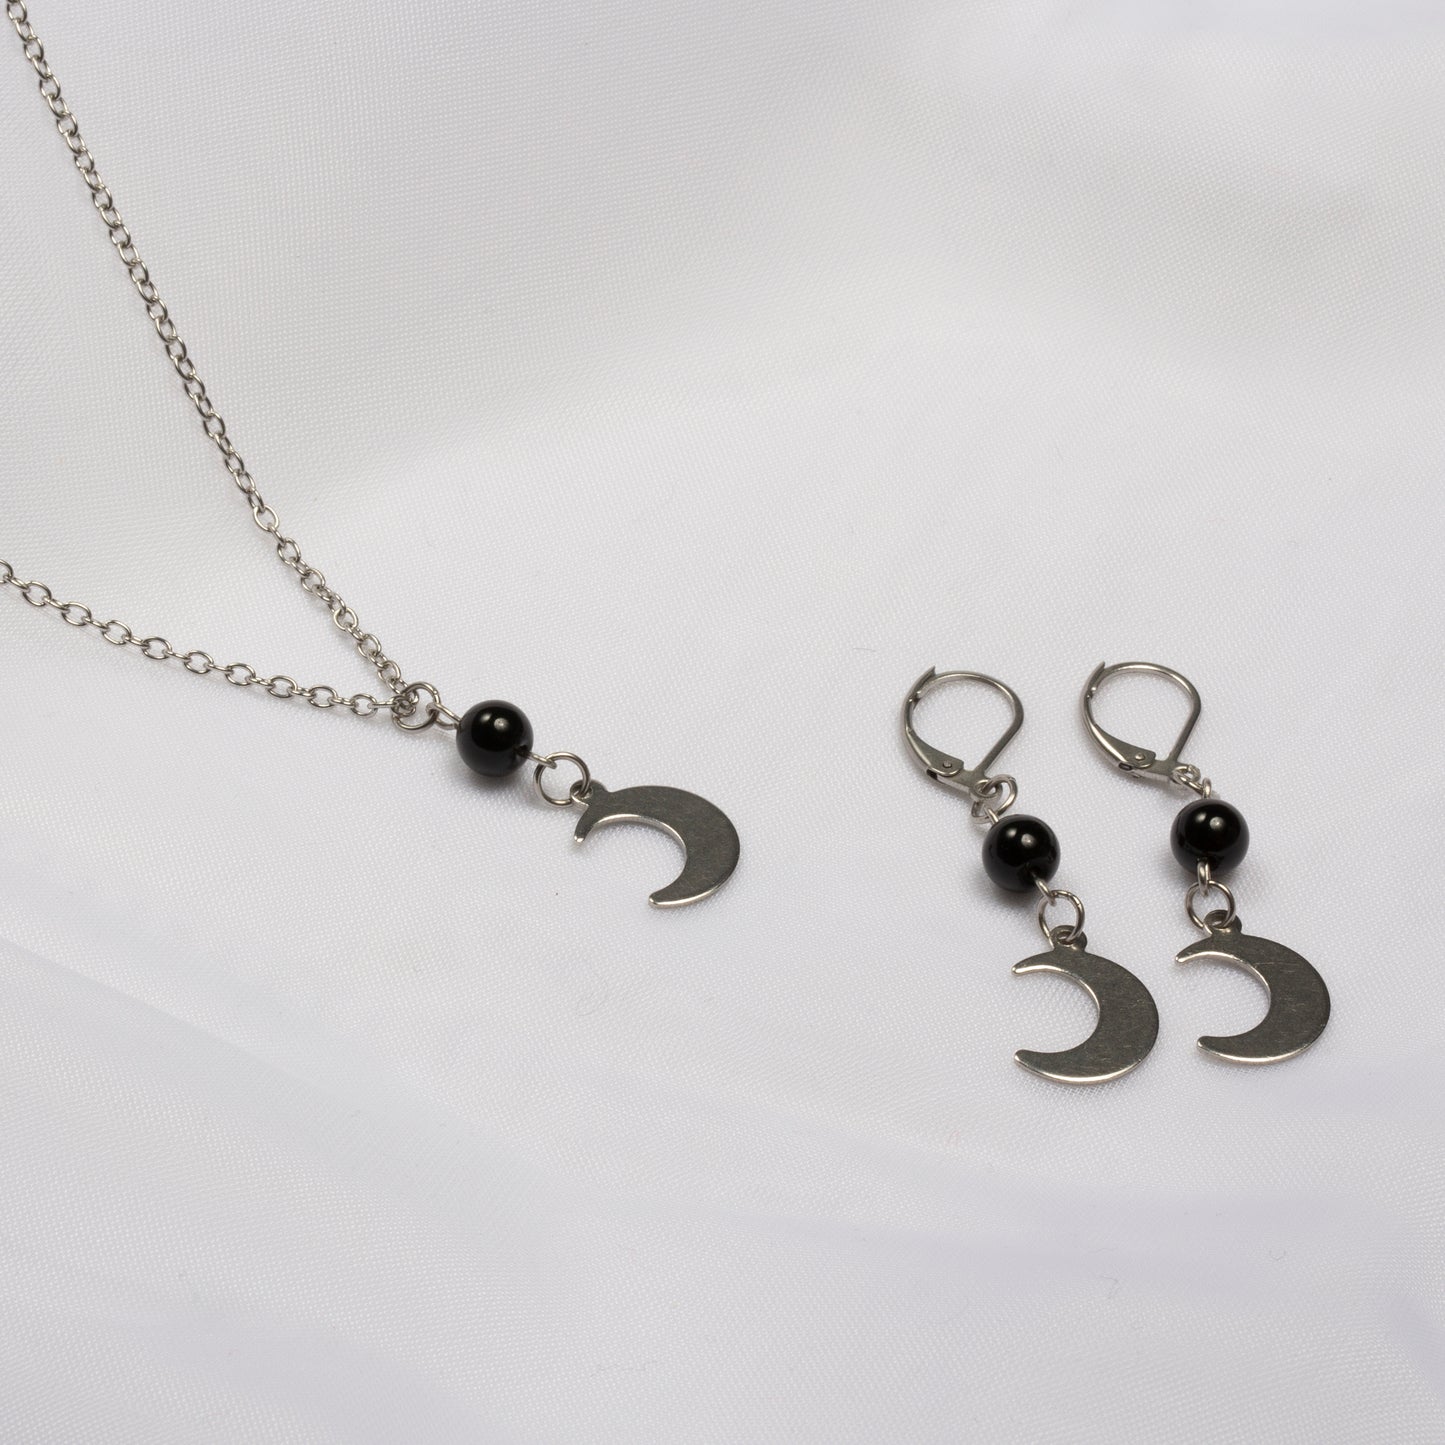 Duo colliers et boucles d'oreille à base d'améthyste avec de l'acier inoxidable pour former la lune qui sert de pendant sur fond blanc